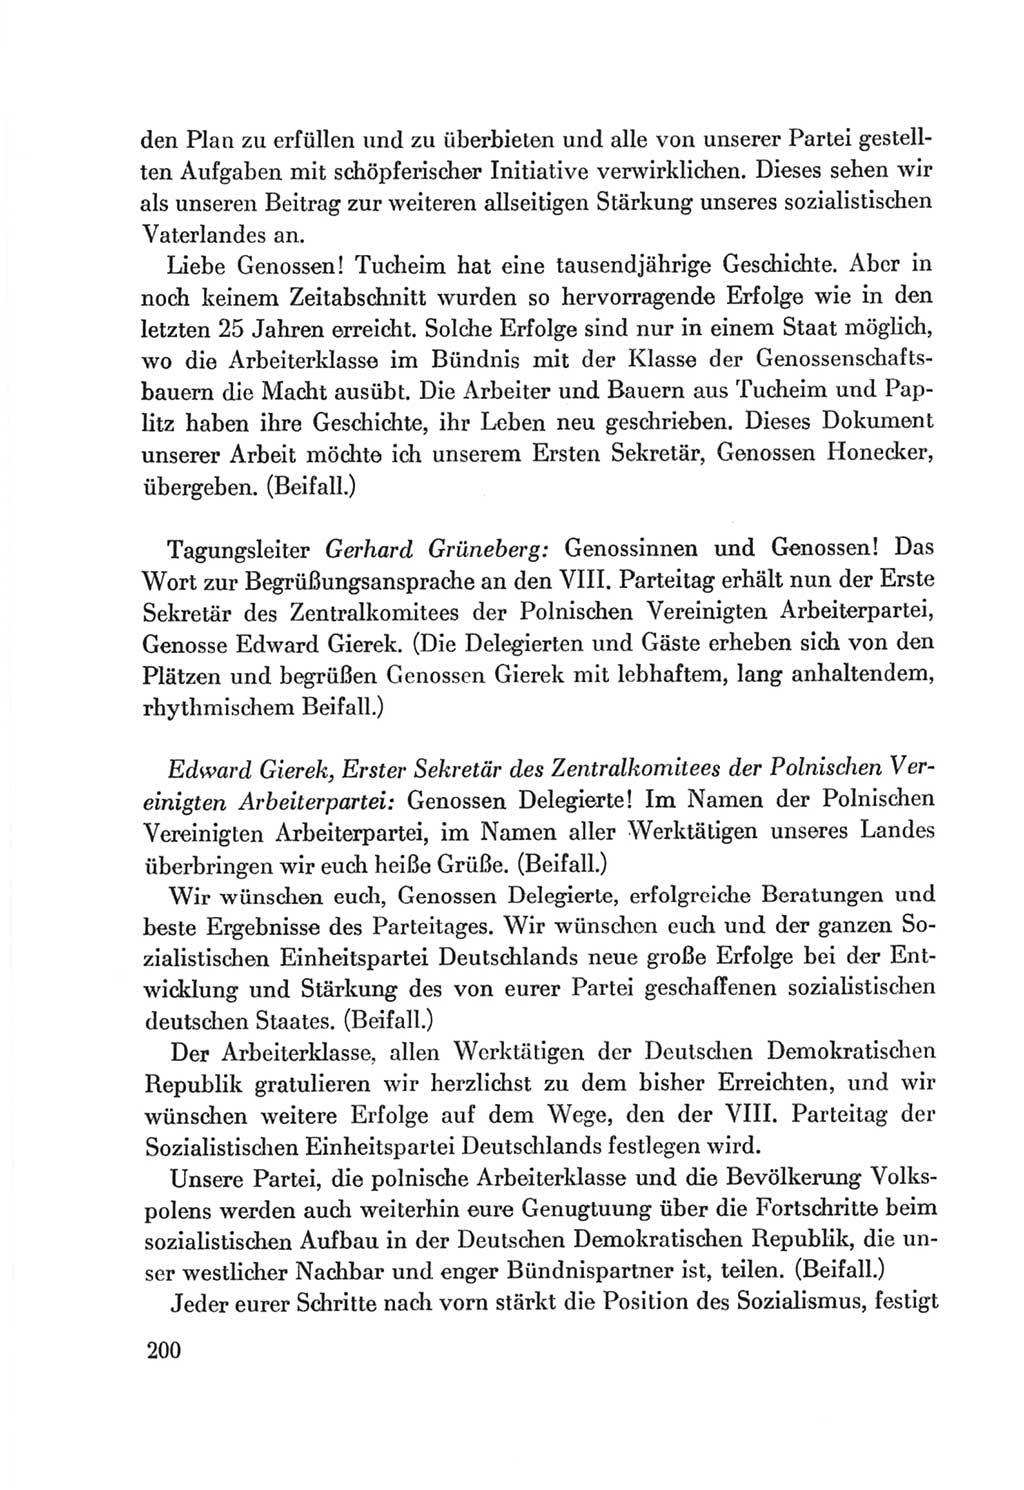 Protokoll der Verhandlungen des Ⅷ. Parteitages der Sozialistischen Einheitspartei Deutschlands (SED) [Deutsche Demokratische Republik (DDR)] 1971, Band 1, Seite 200 (Prot. Verh. Ⅷ. PT SED DDR 1971, Bd. 1, S. 200)